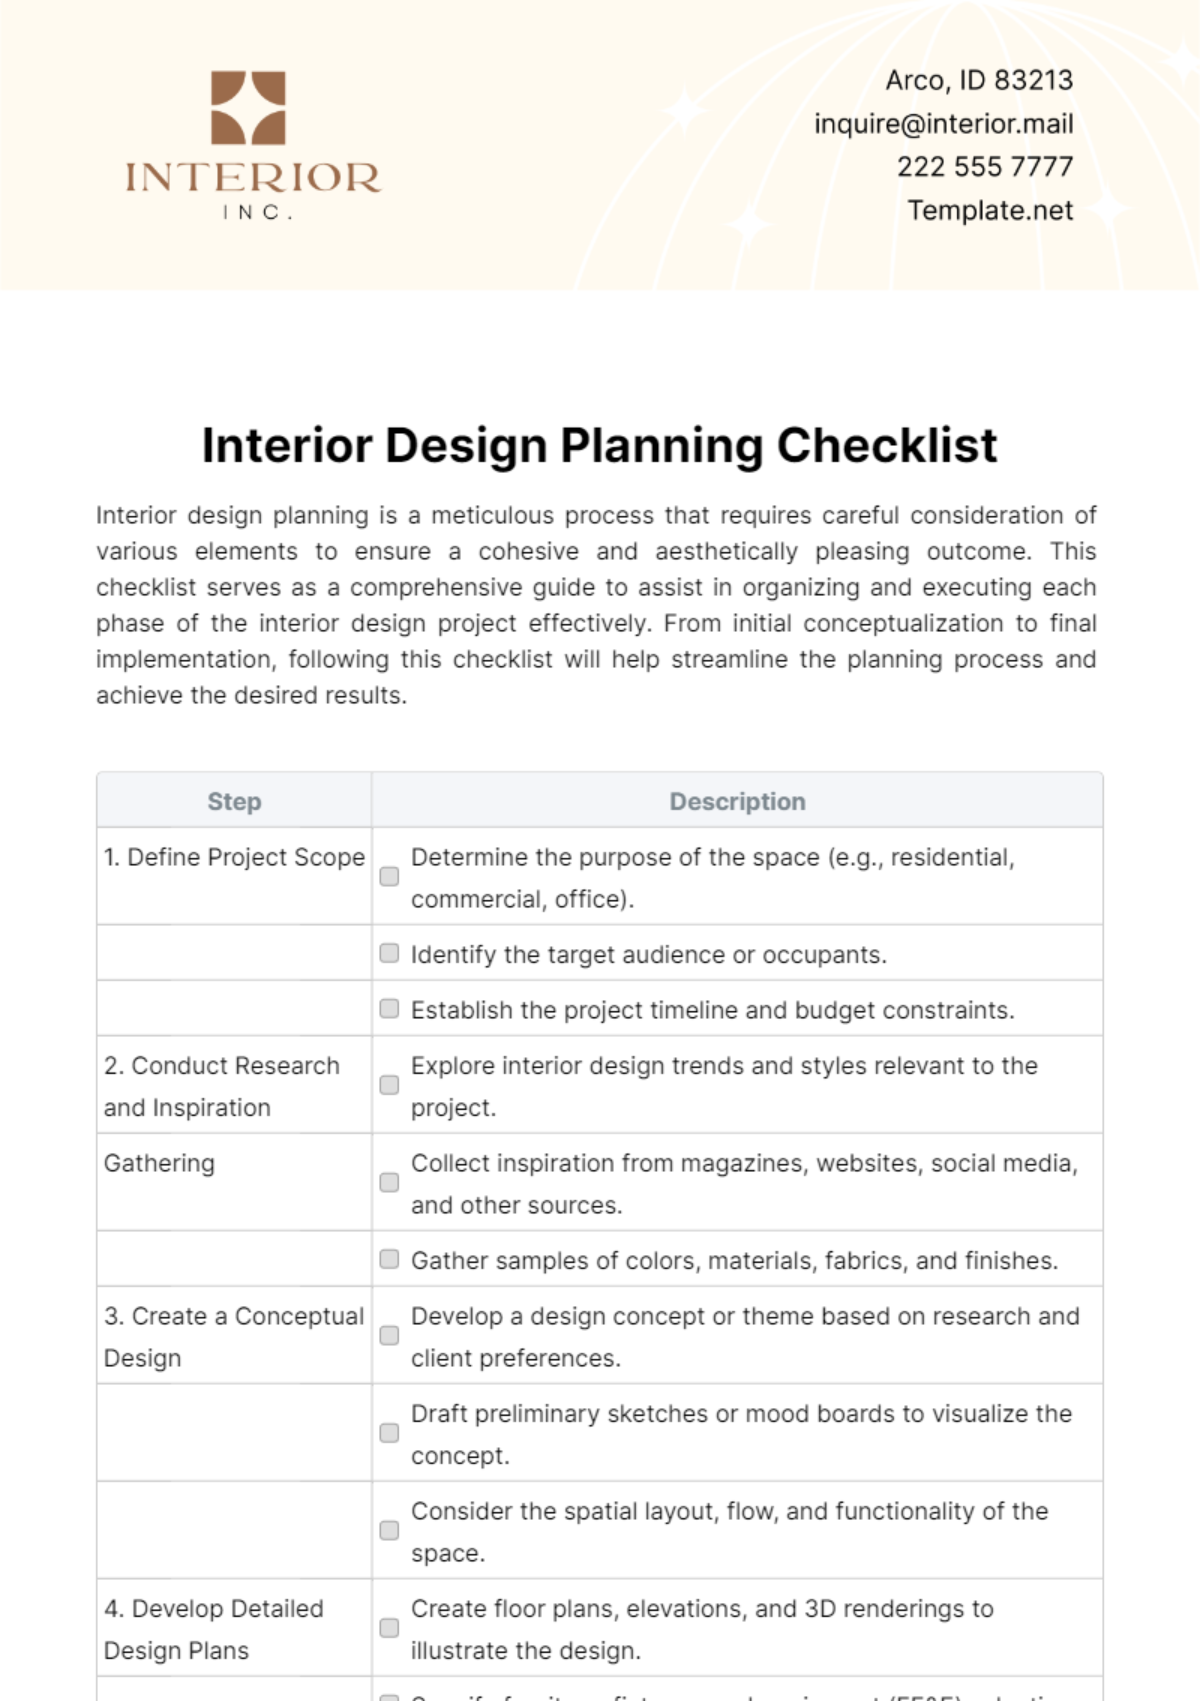 Interior Design Planning Checklist Template